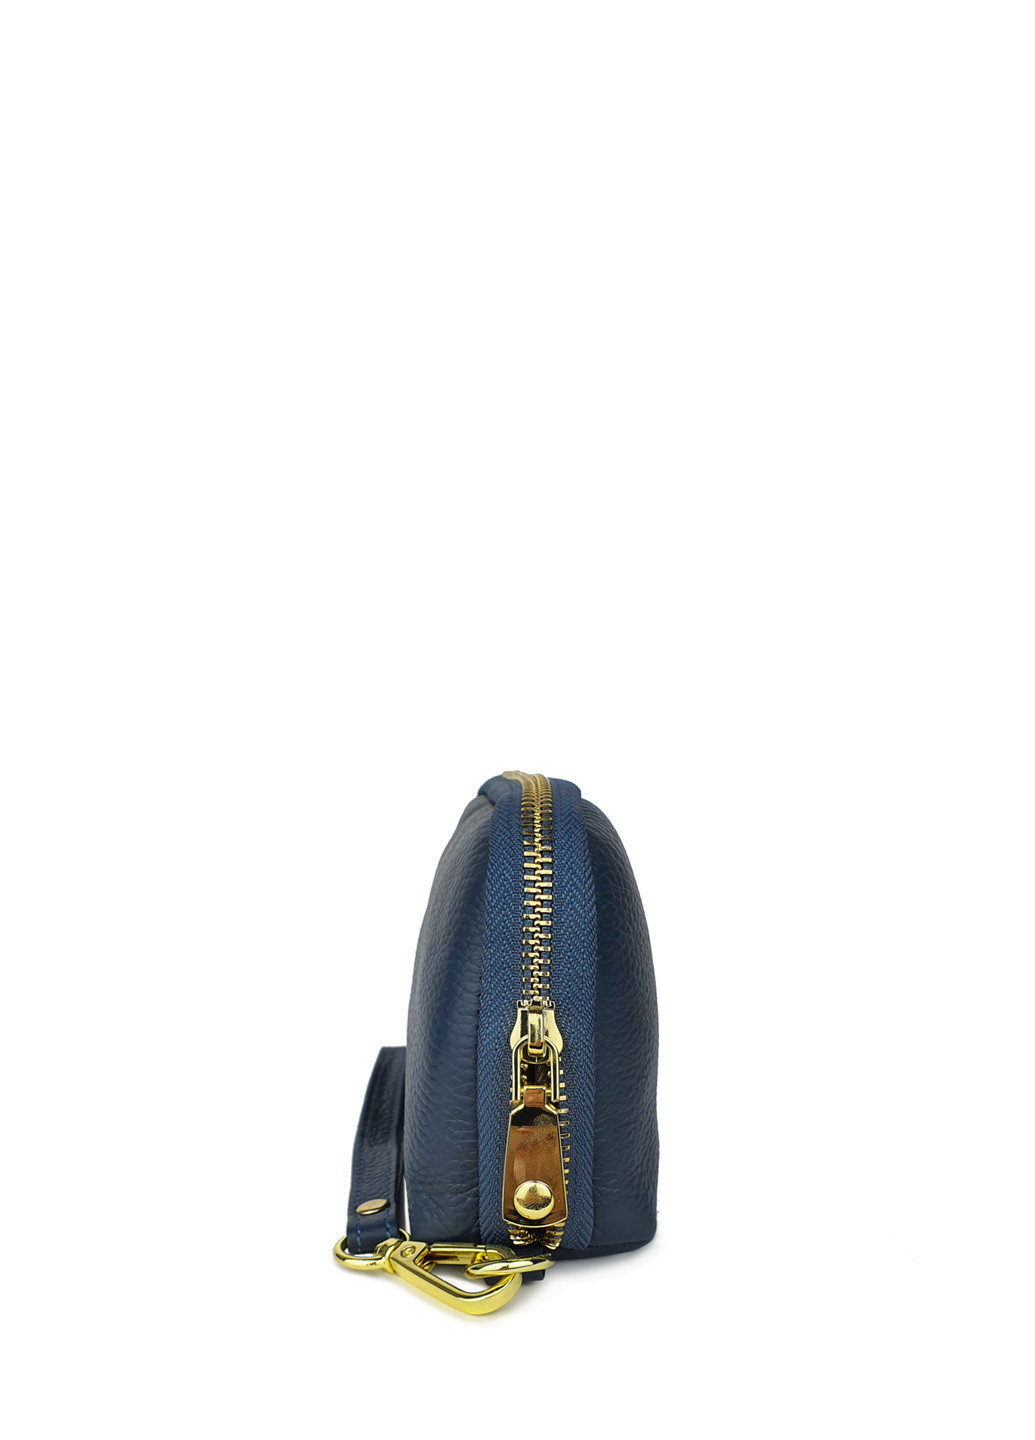 Женский кошелек портмоне большой синий кожаный 21*11*5 Fashion (252033299)